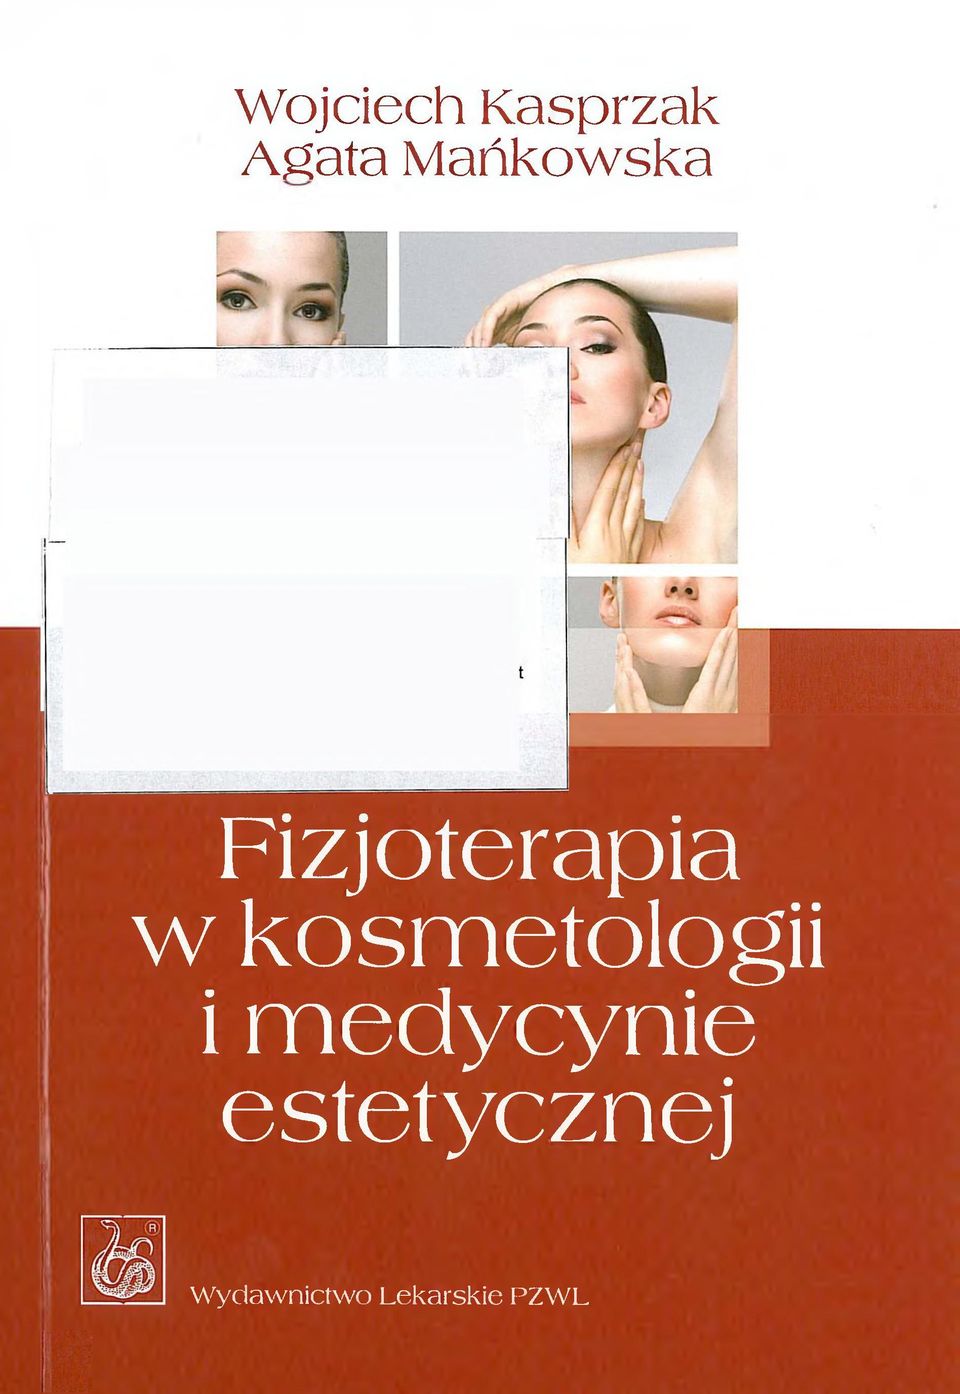 Fizjoterapia w kosmetologii